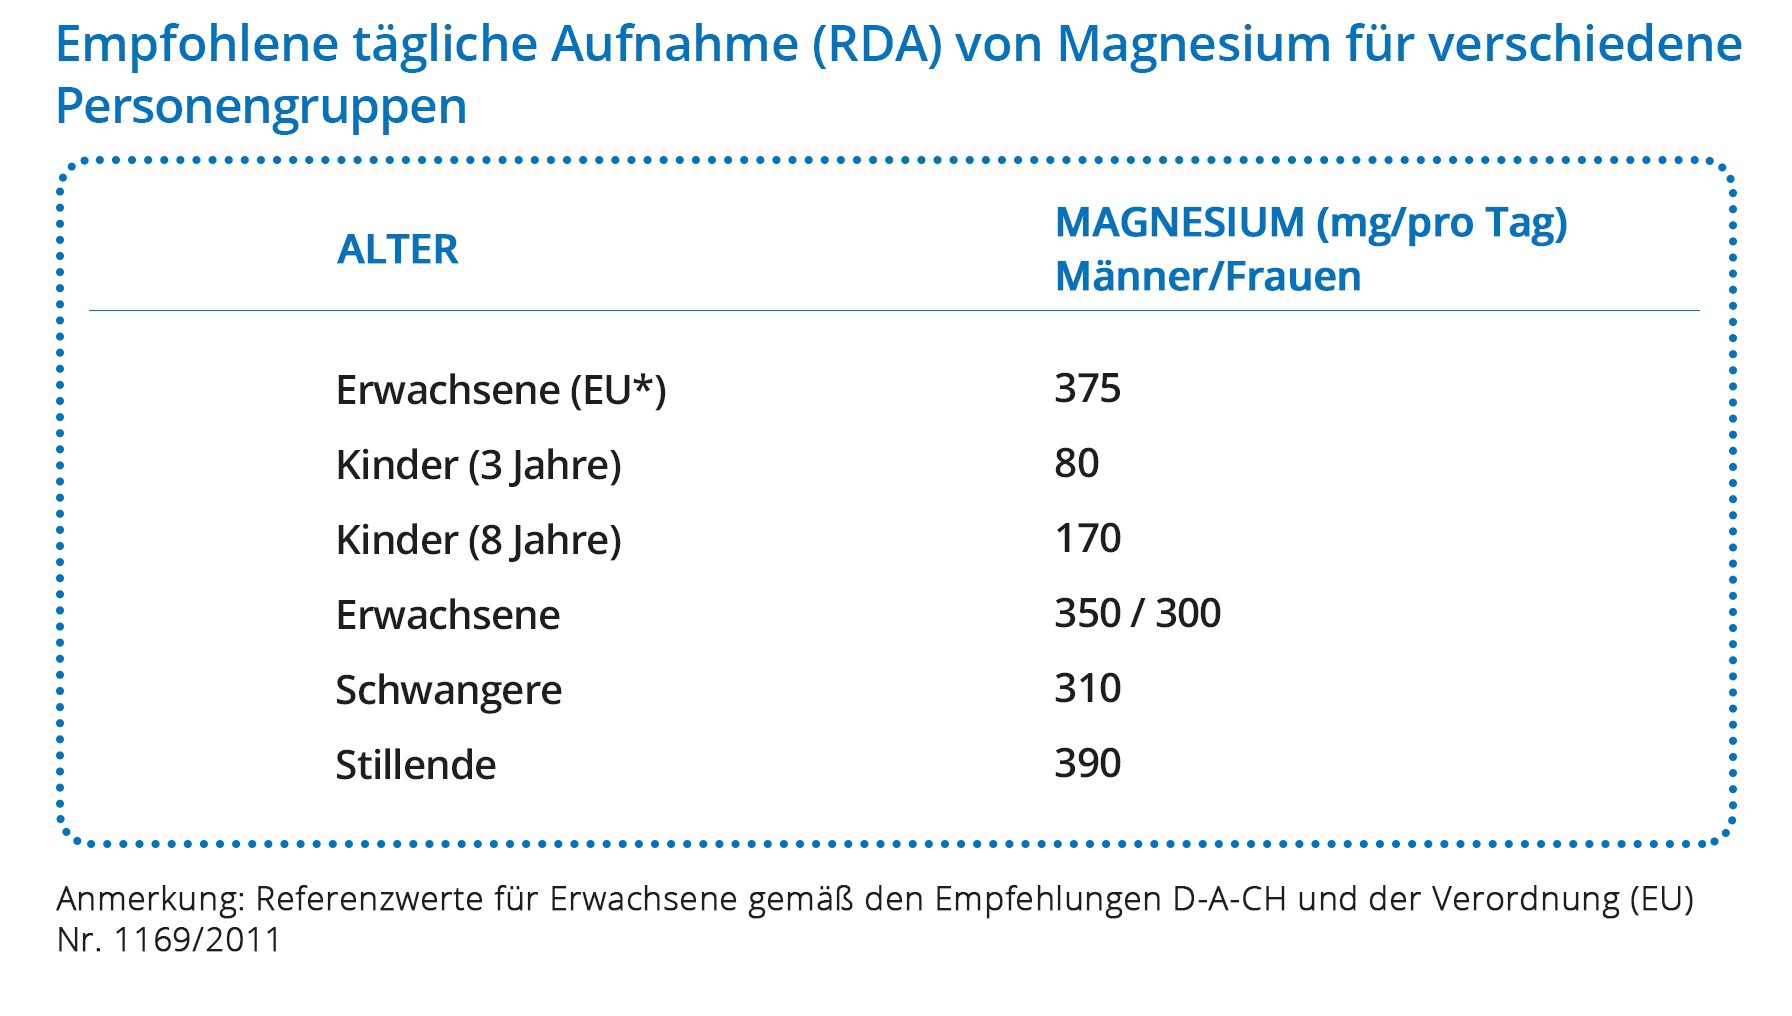 Empfohlene tägliche Aufnahme von Magnesium 